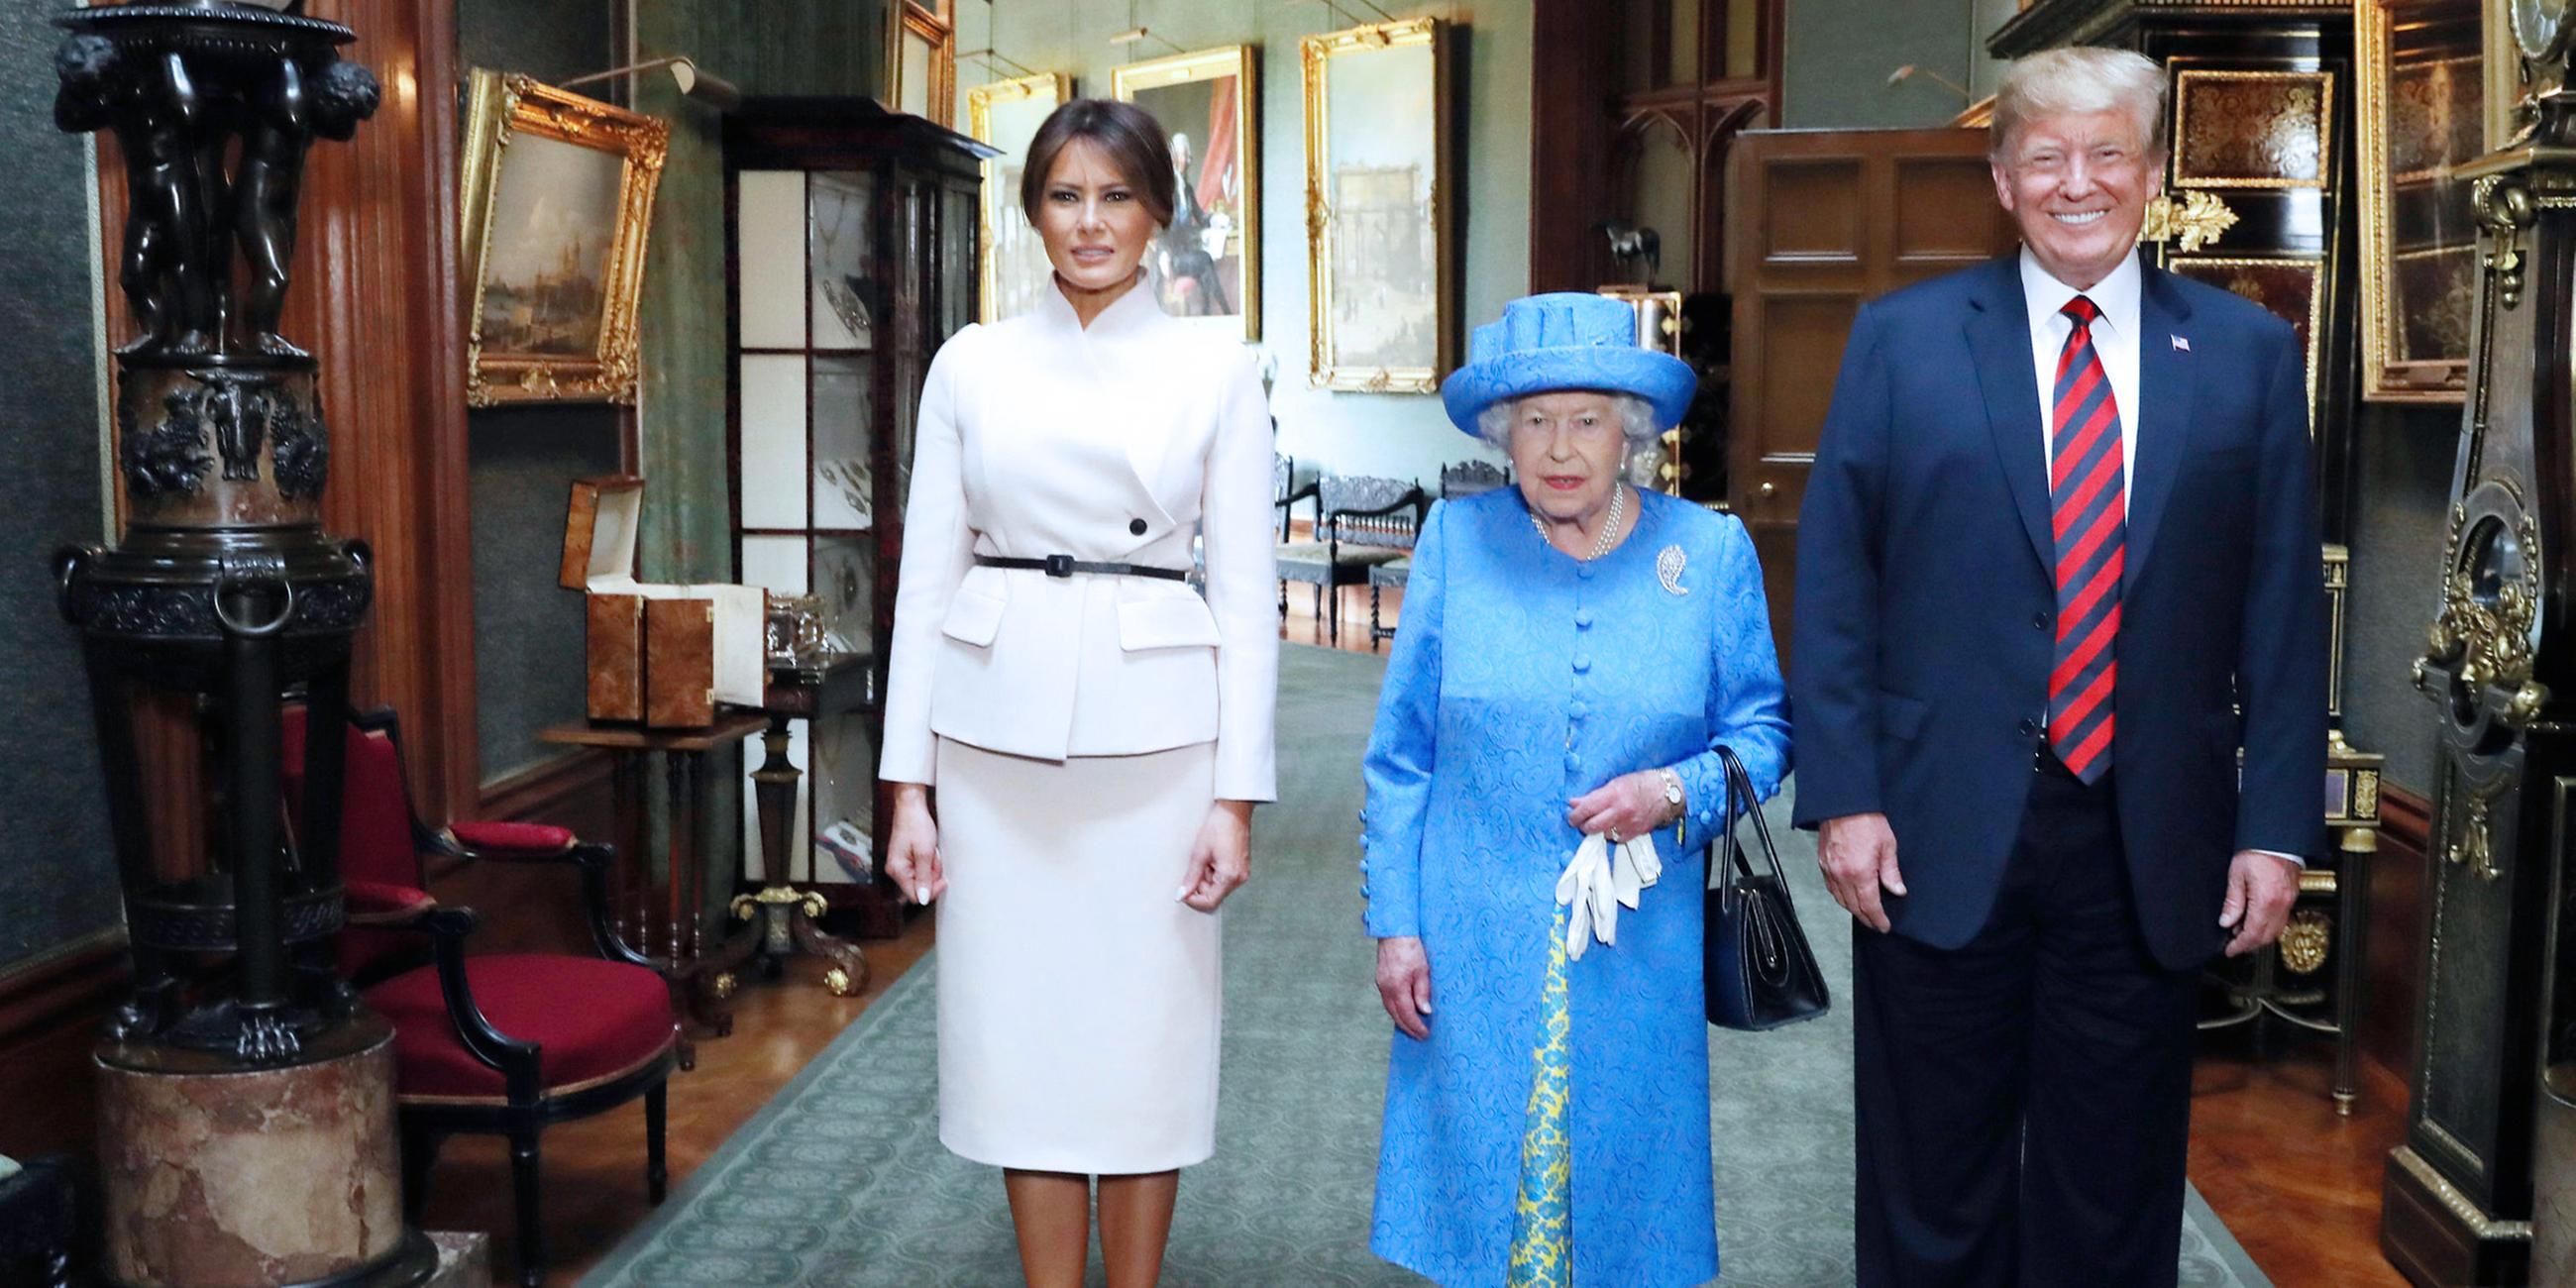 Donald Trump, Präsident der USA, und seine Frau Melania zu Besuch bei Queen Elizabeth II, aufgenommen am 13.07.2018 in Windsor, England